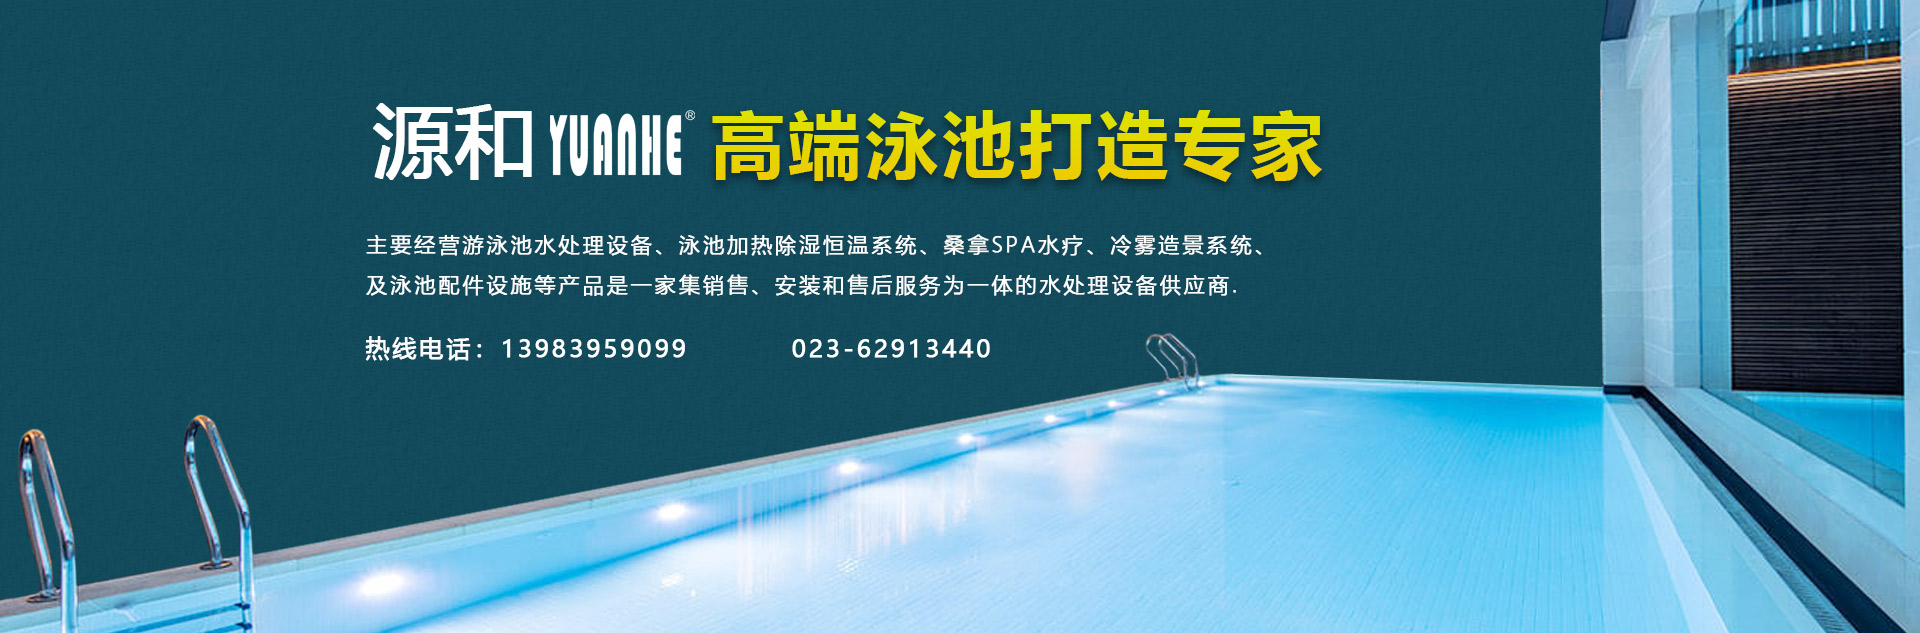 重庆水疗泳池设备提供商